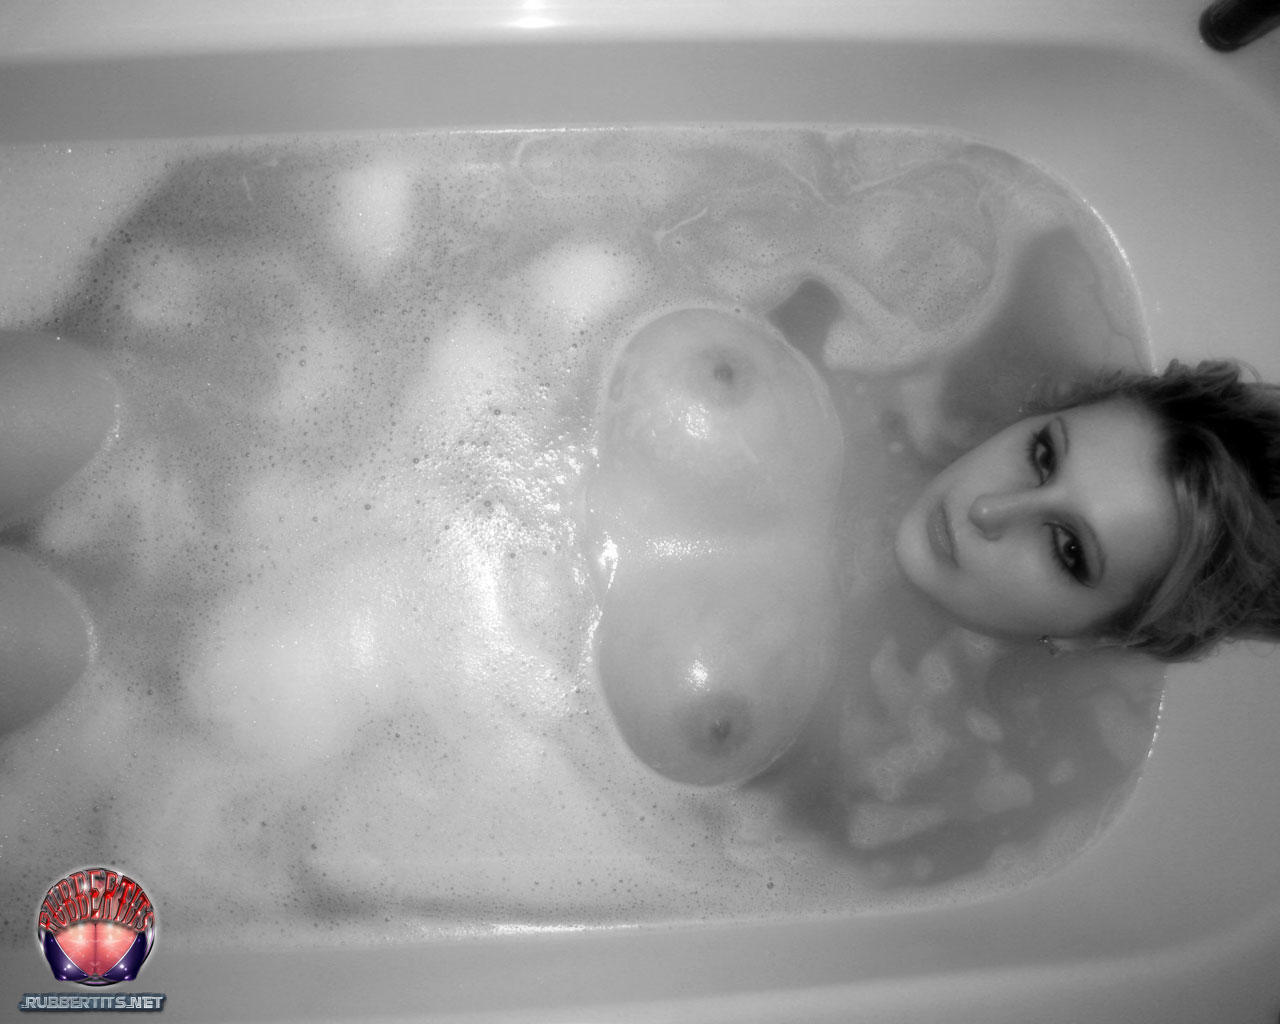 Rubber Tits Bathtime Porno-Foto #426805766 | Rubber Tits Pics, Bath, Mobiler Porno